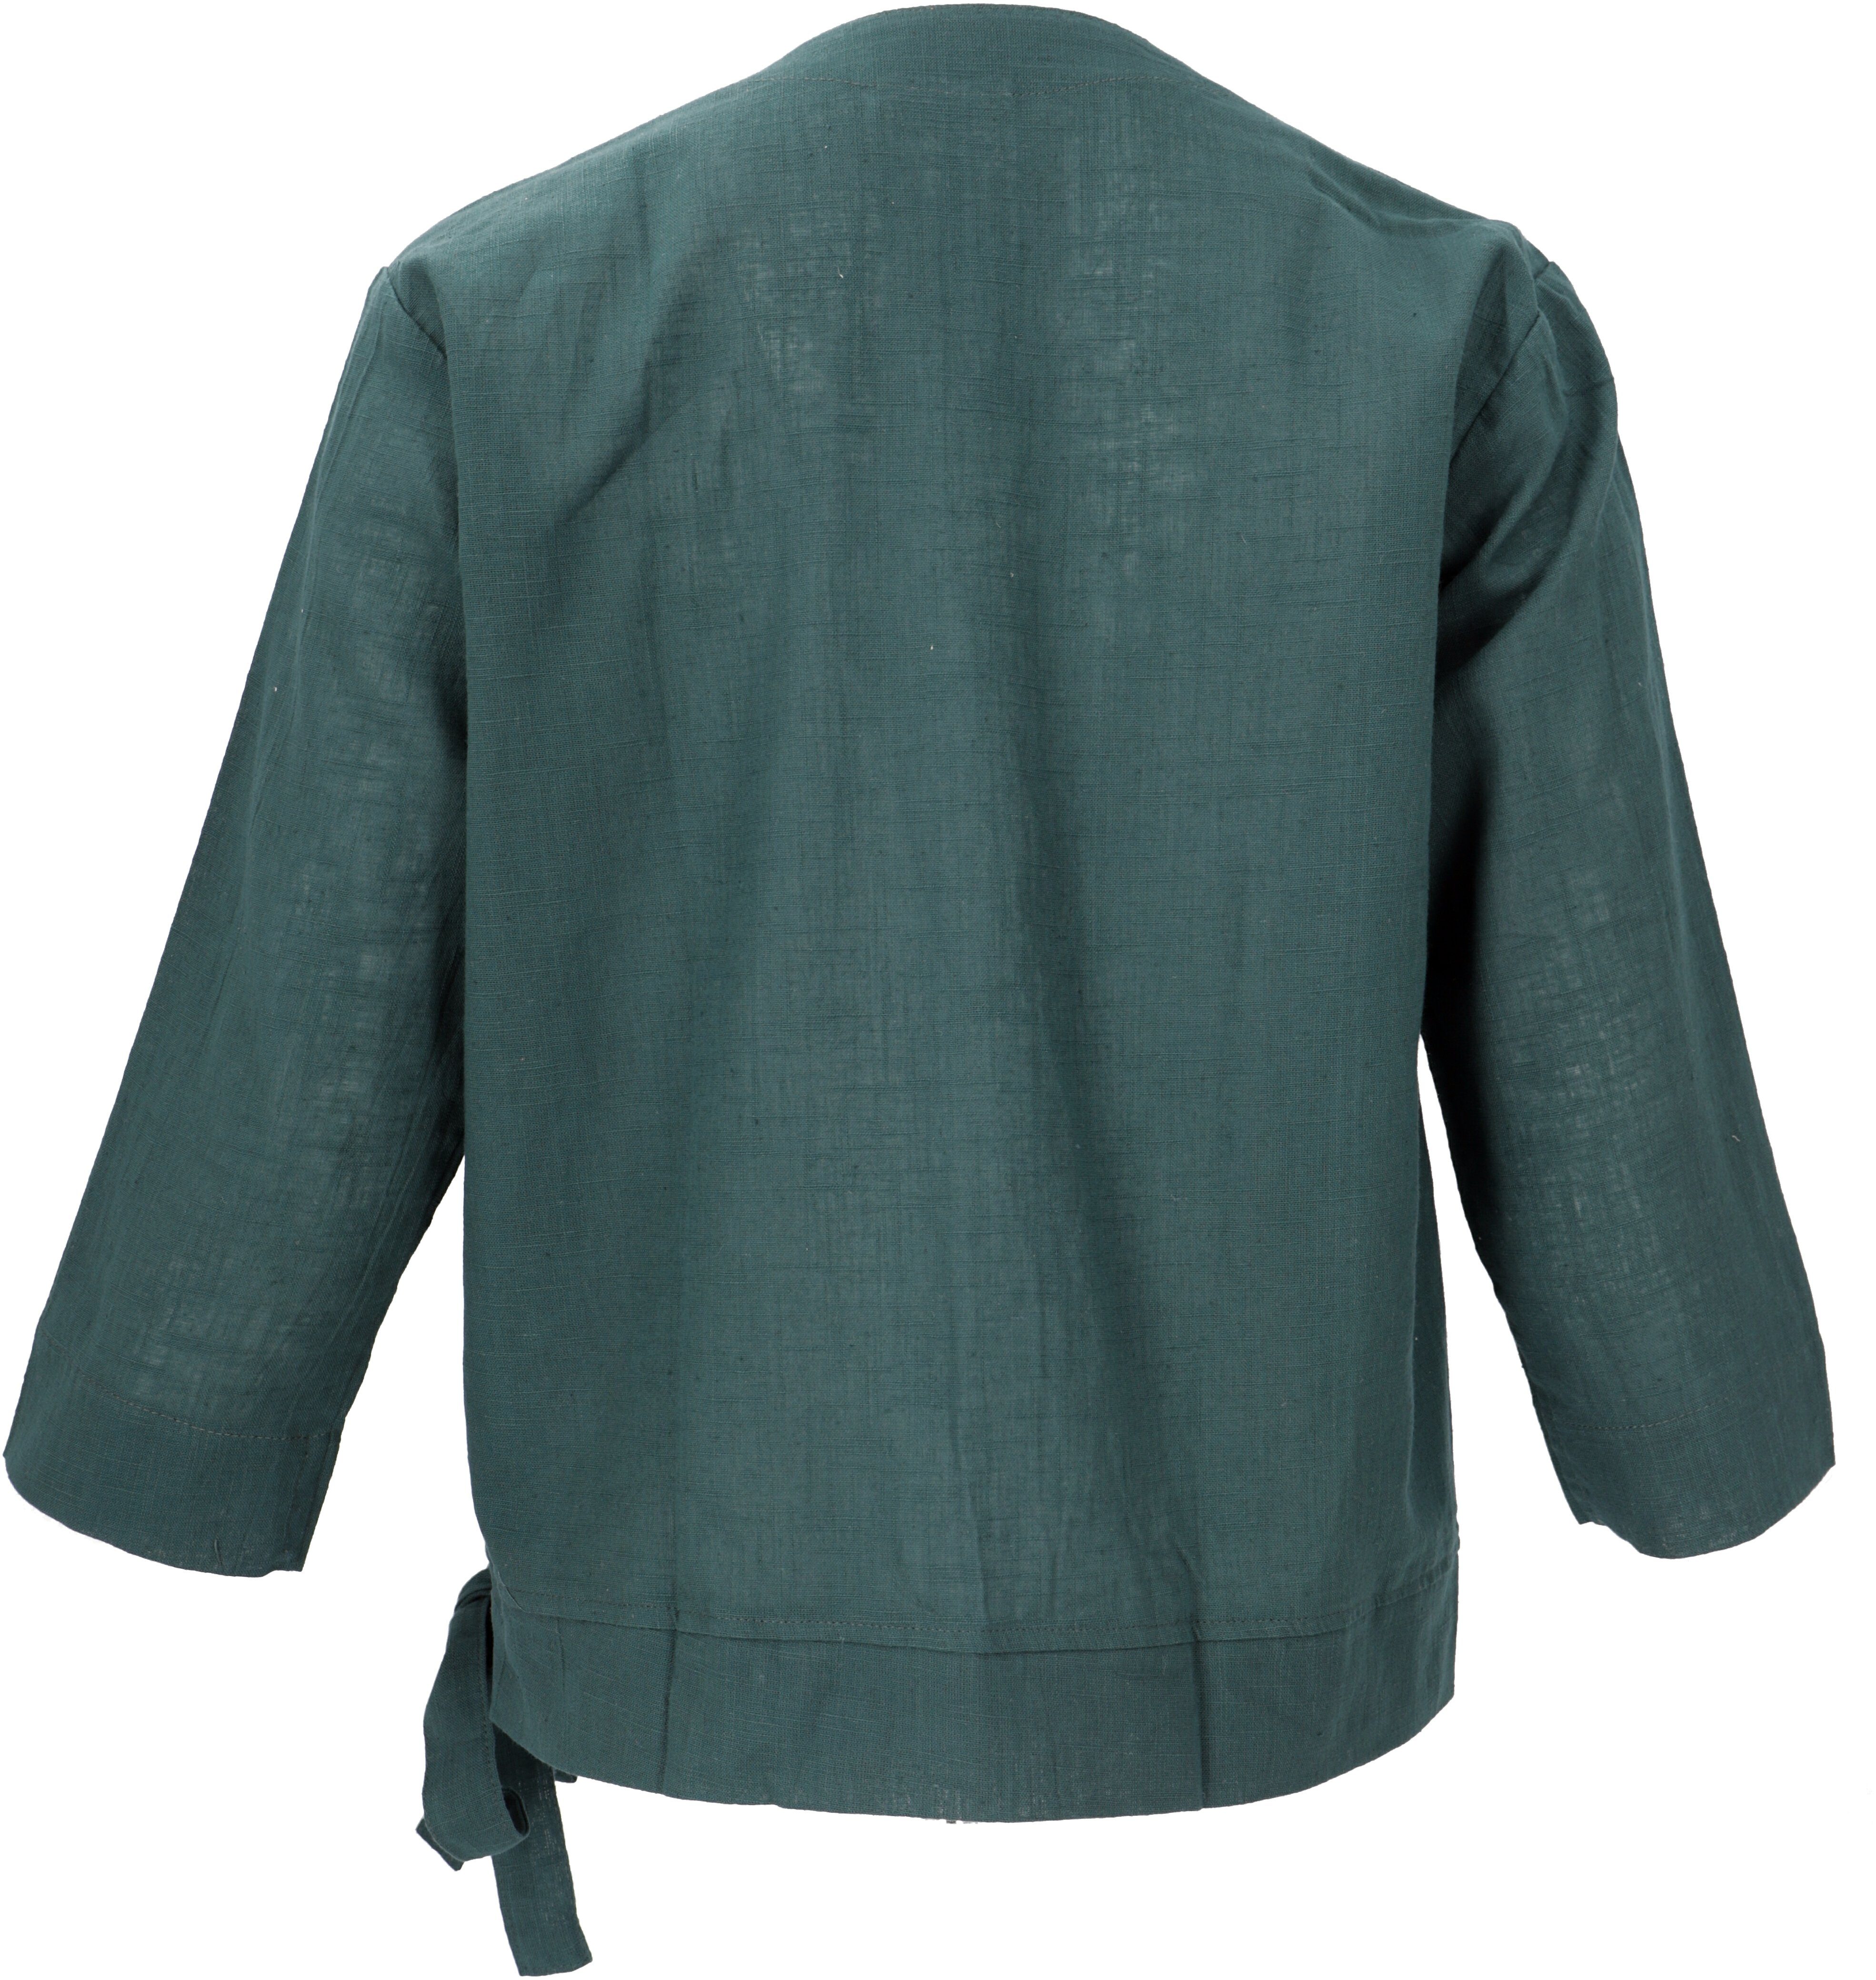 Guru-Shop Longbluse Baumwoll Leichte Sommerbluse Bluse, grün Bekleidung alternative in